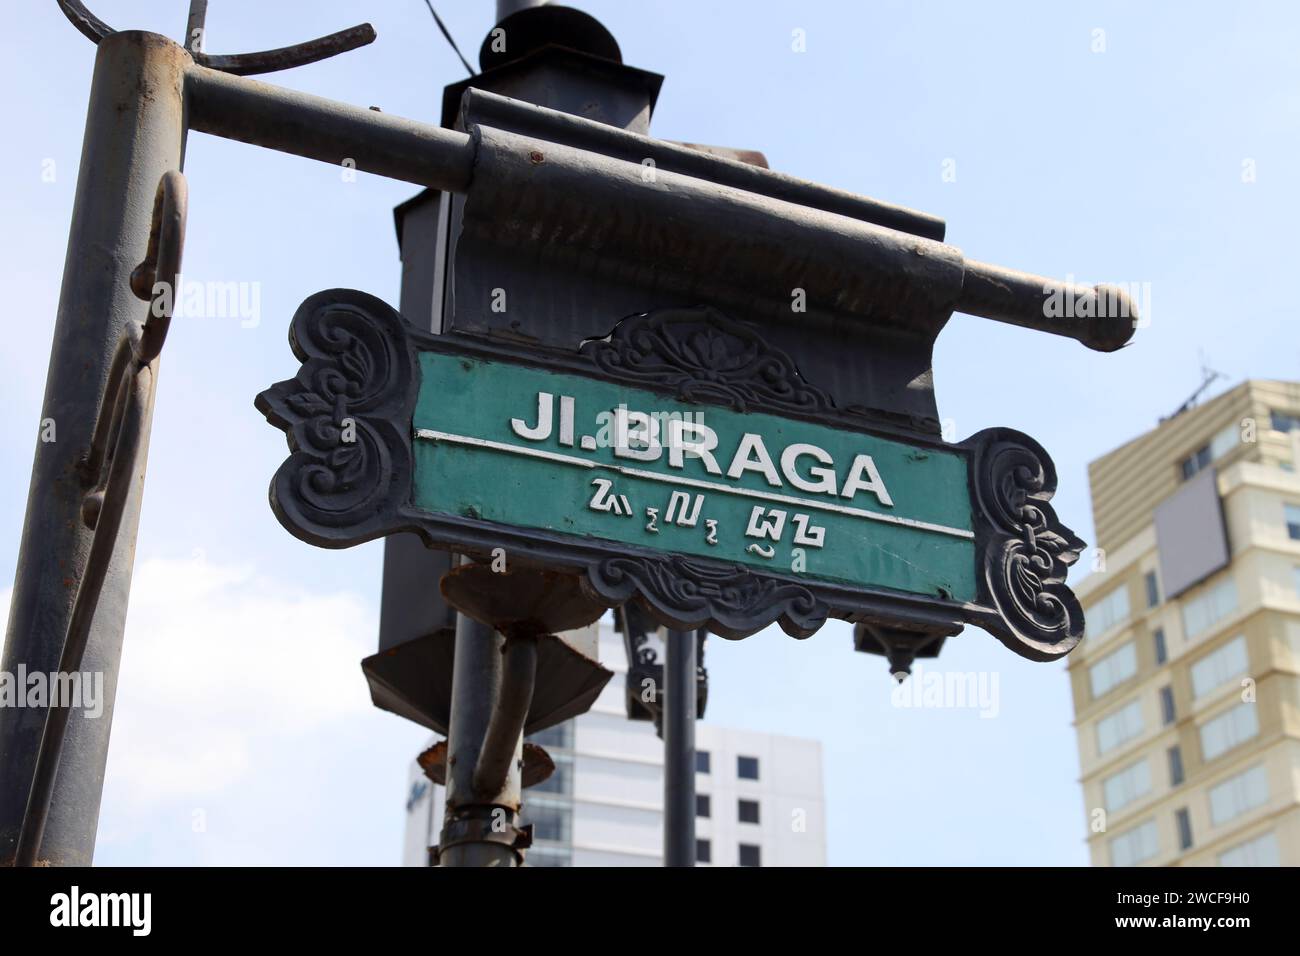 JL. Señal de nombre de Braga o Braga Street en el centro de la ciudad de Bandung, Indonesia. Foto de stock